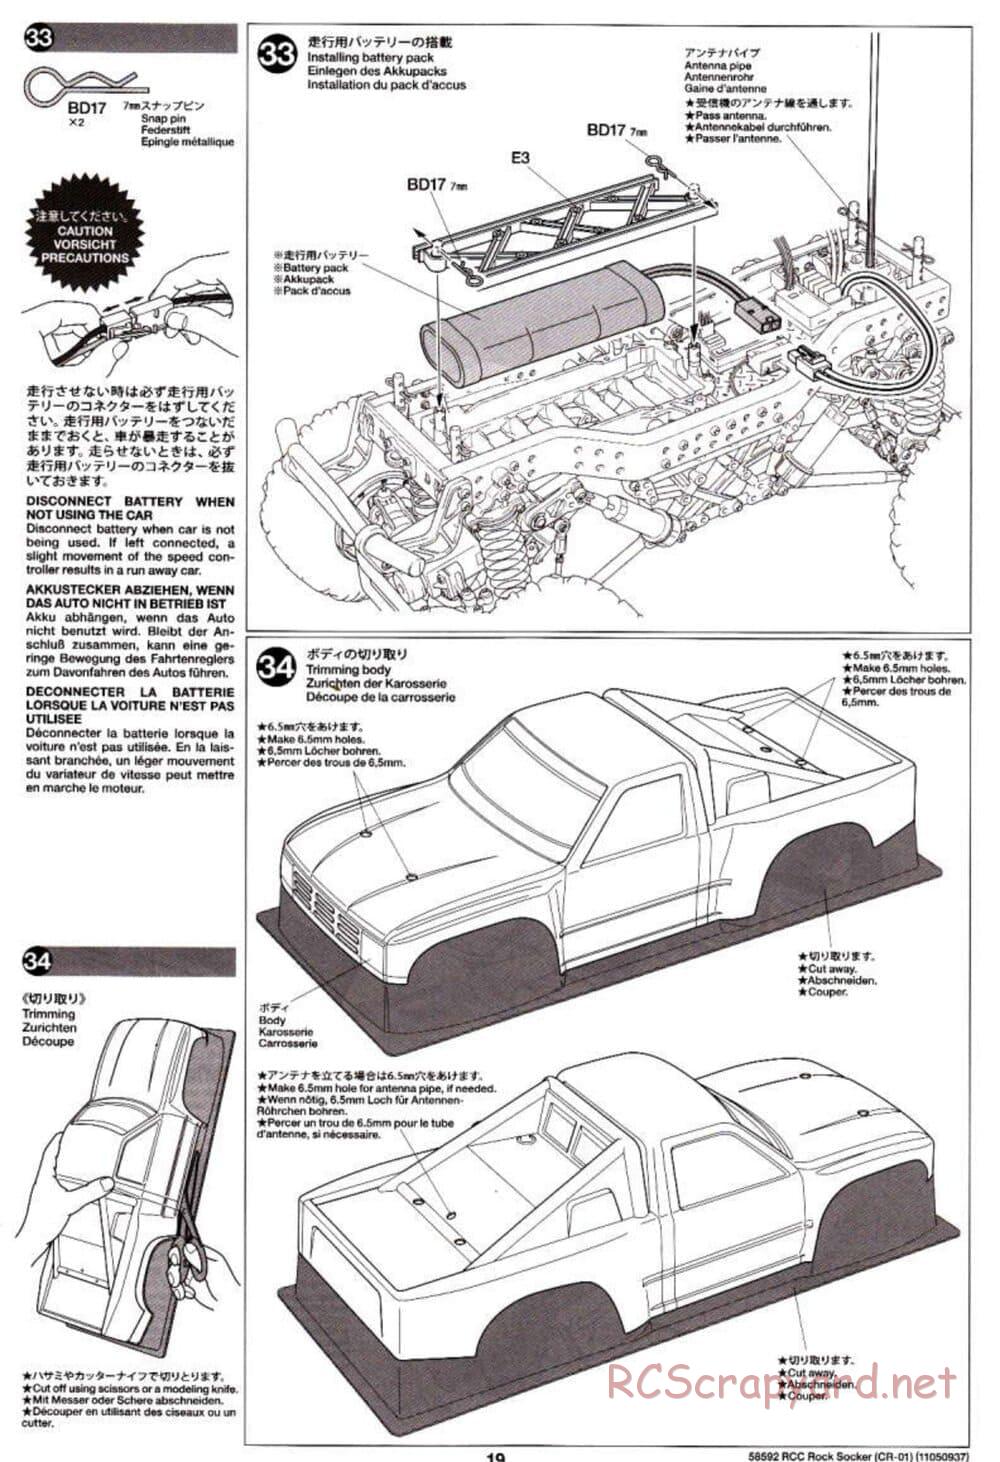 Tamiya - Rock Socker - CR-01 Chassis - Manual - Page 19